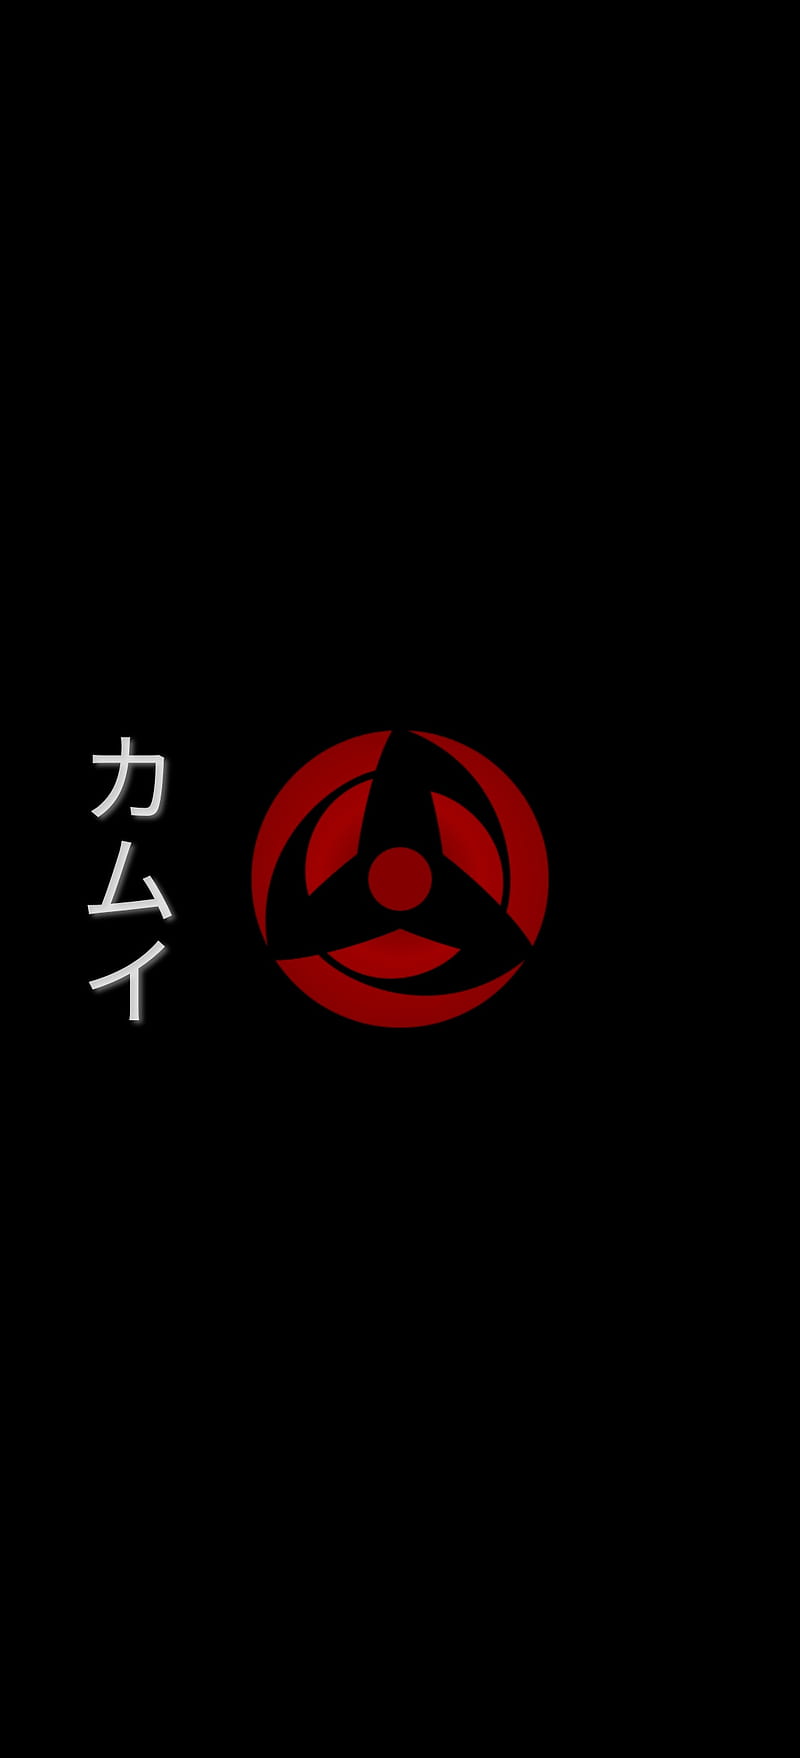 Bạn đã sẵn sàng trải nghiệm Sharingan Kamui chưa? Không chỉ đem lại sức mạnh khủng khiếp, Sharingan Kamui còn được xem là một trong những kỹ năng đặc biệt và quyến rũ nhất trong anime Naruto. Hãy cùng đón xem tranh tải về khả năng toàn diện của Sharingan Kamui.